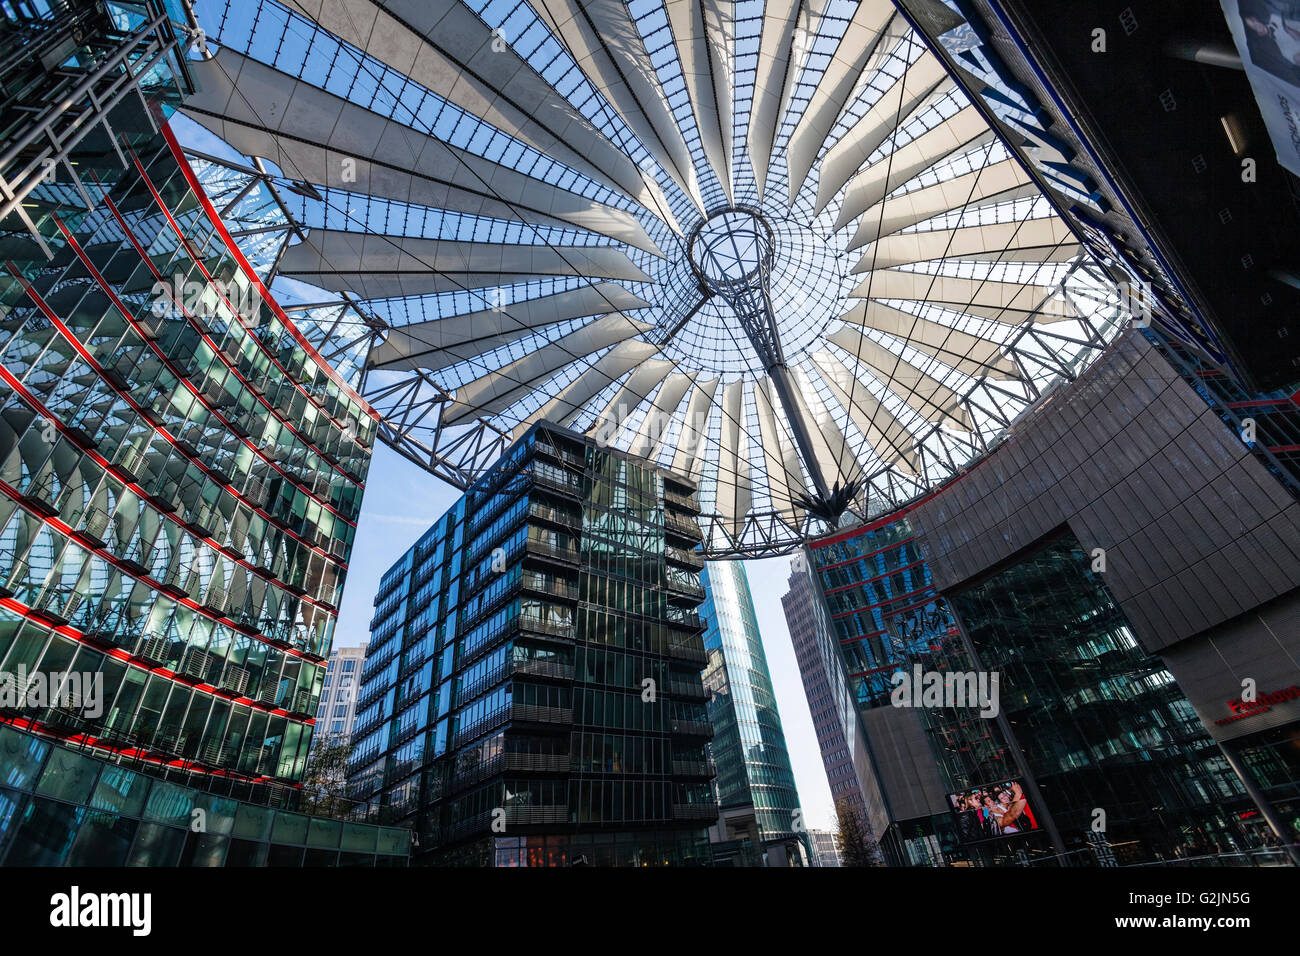 Nouveau Sony Center forum couvert par un dôme en verre, architecte Helmut Jahn Potsdamer Platz, Berlin Banque D'Images